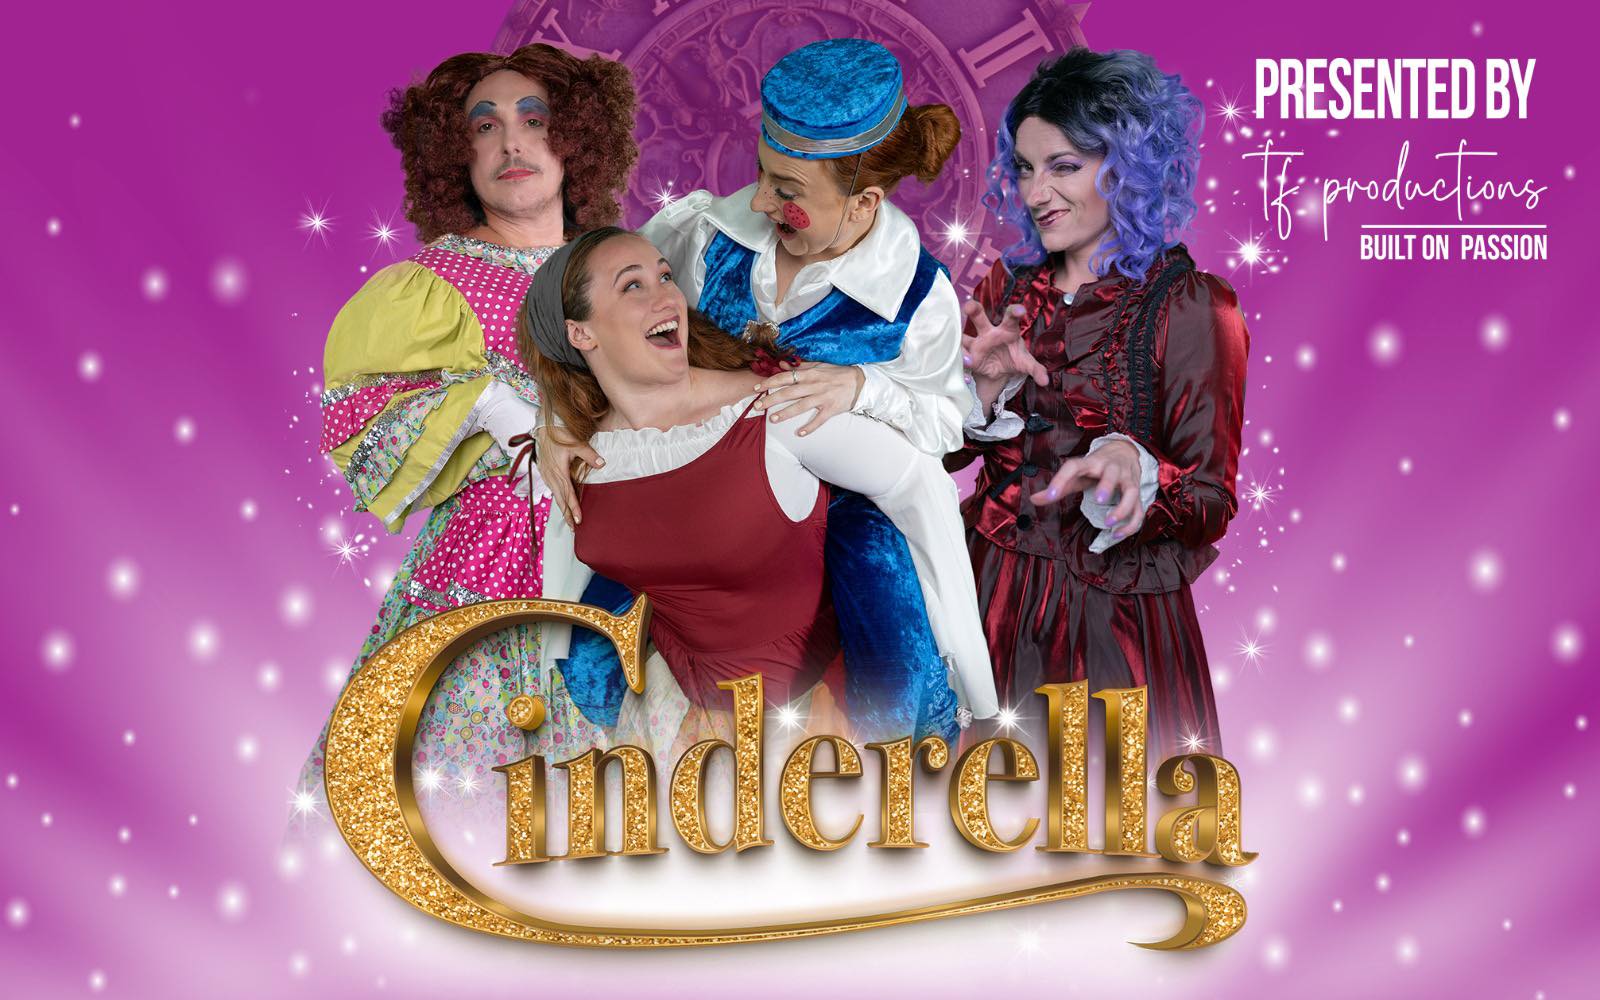 TF Productions presents: Cinderella